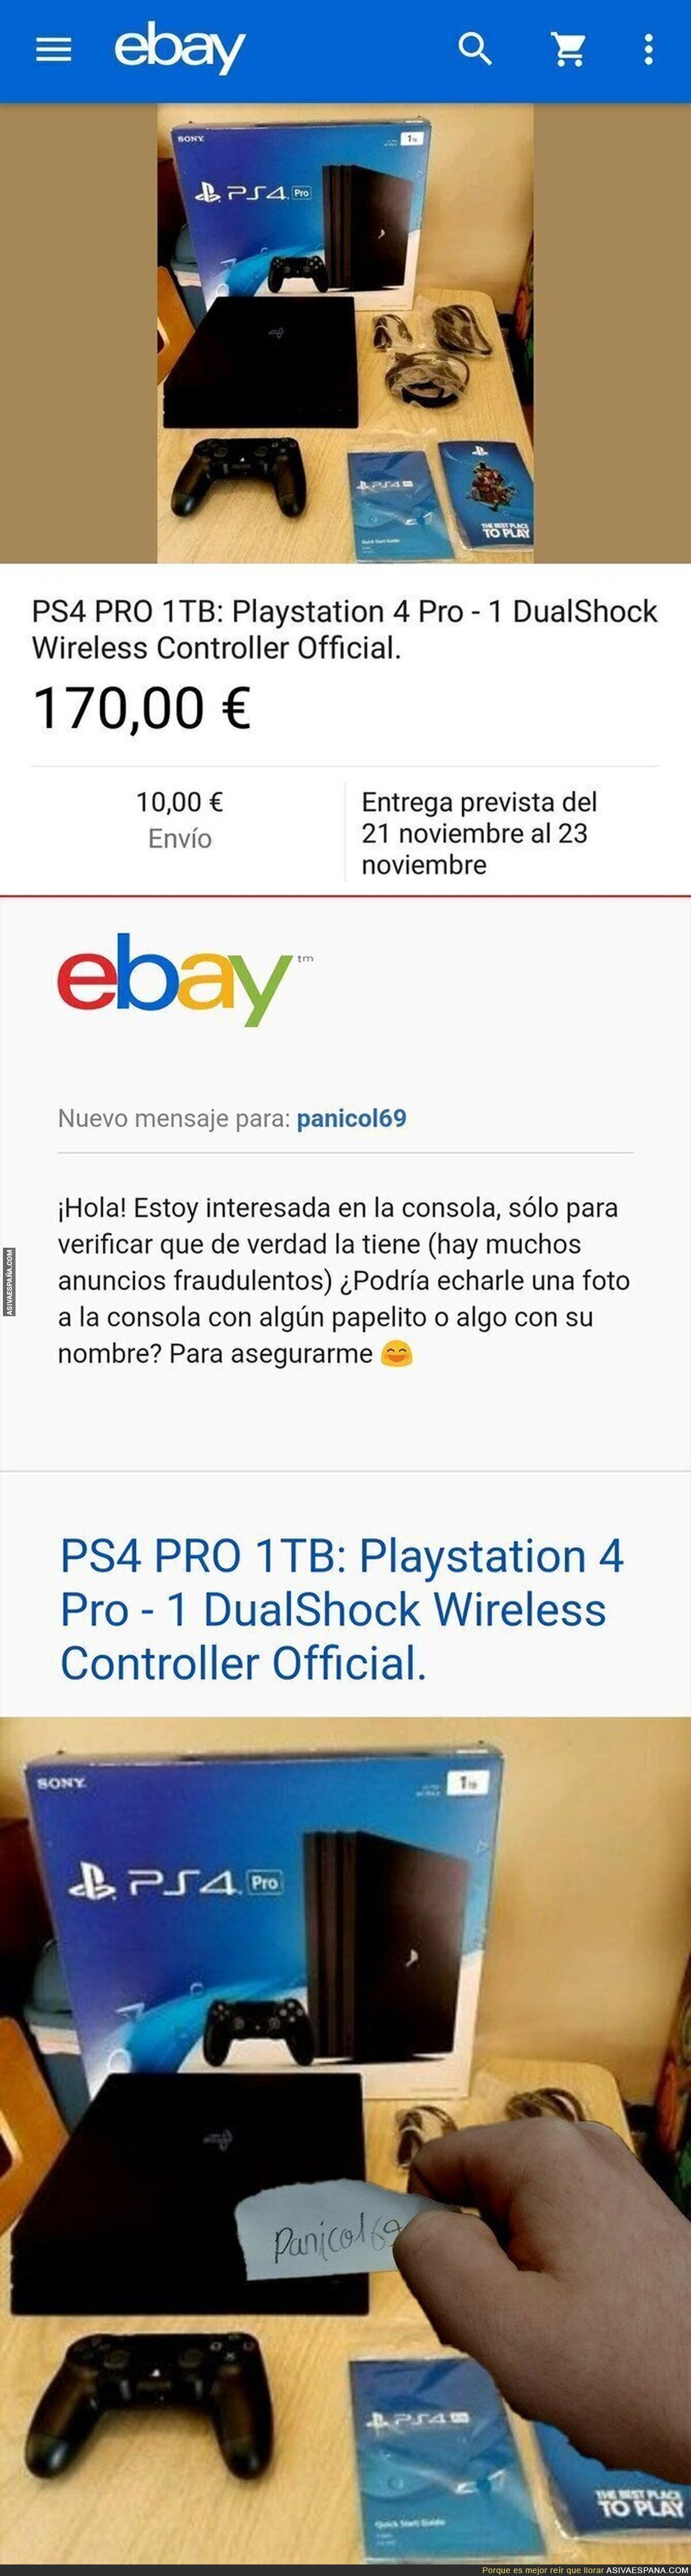 Se encuentra una PS4 PRO de 1TB por eBay, pregunta si es una estafa y recibe una respuesta delirante